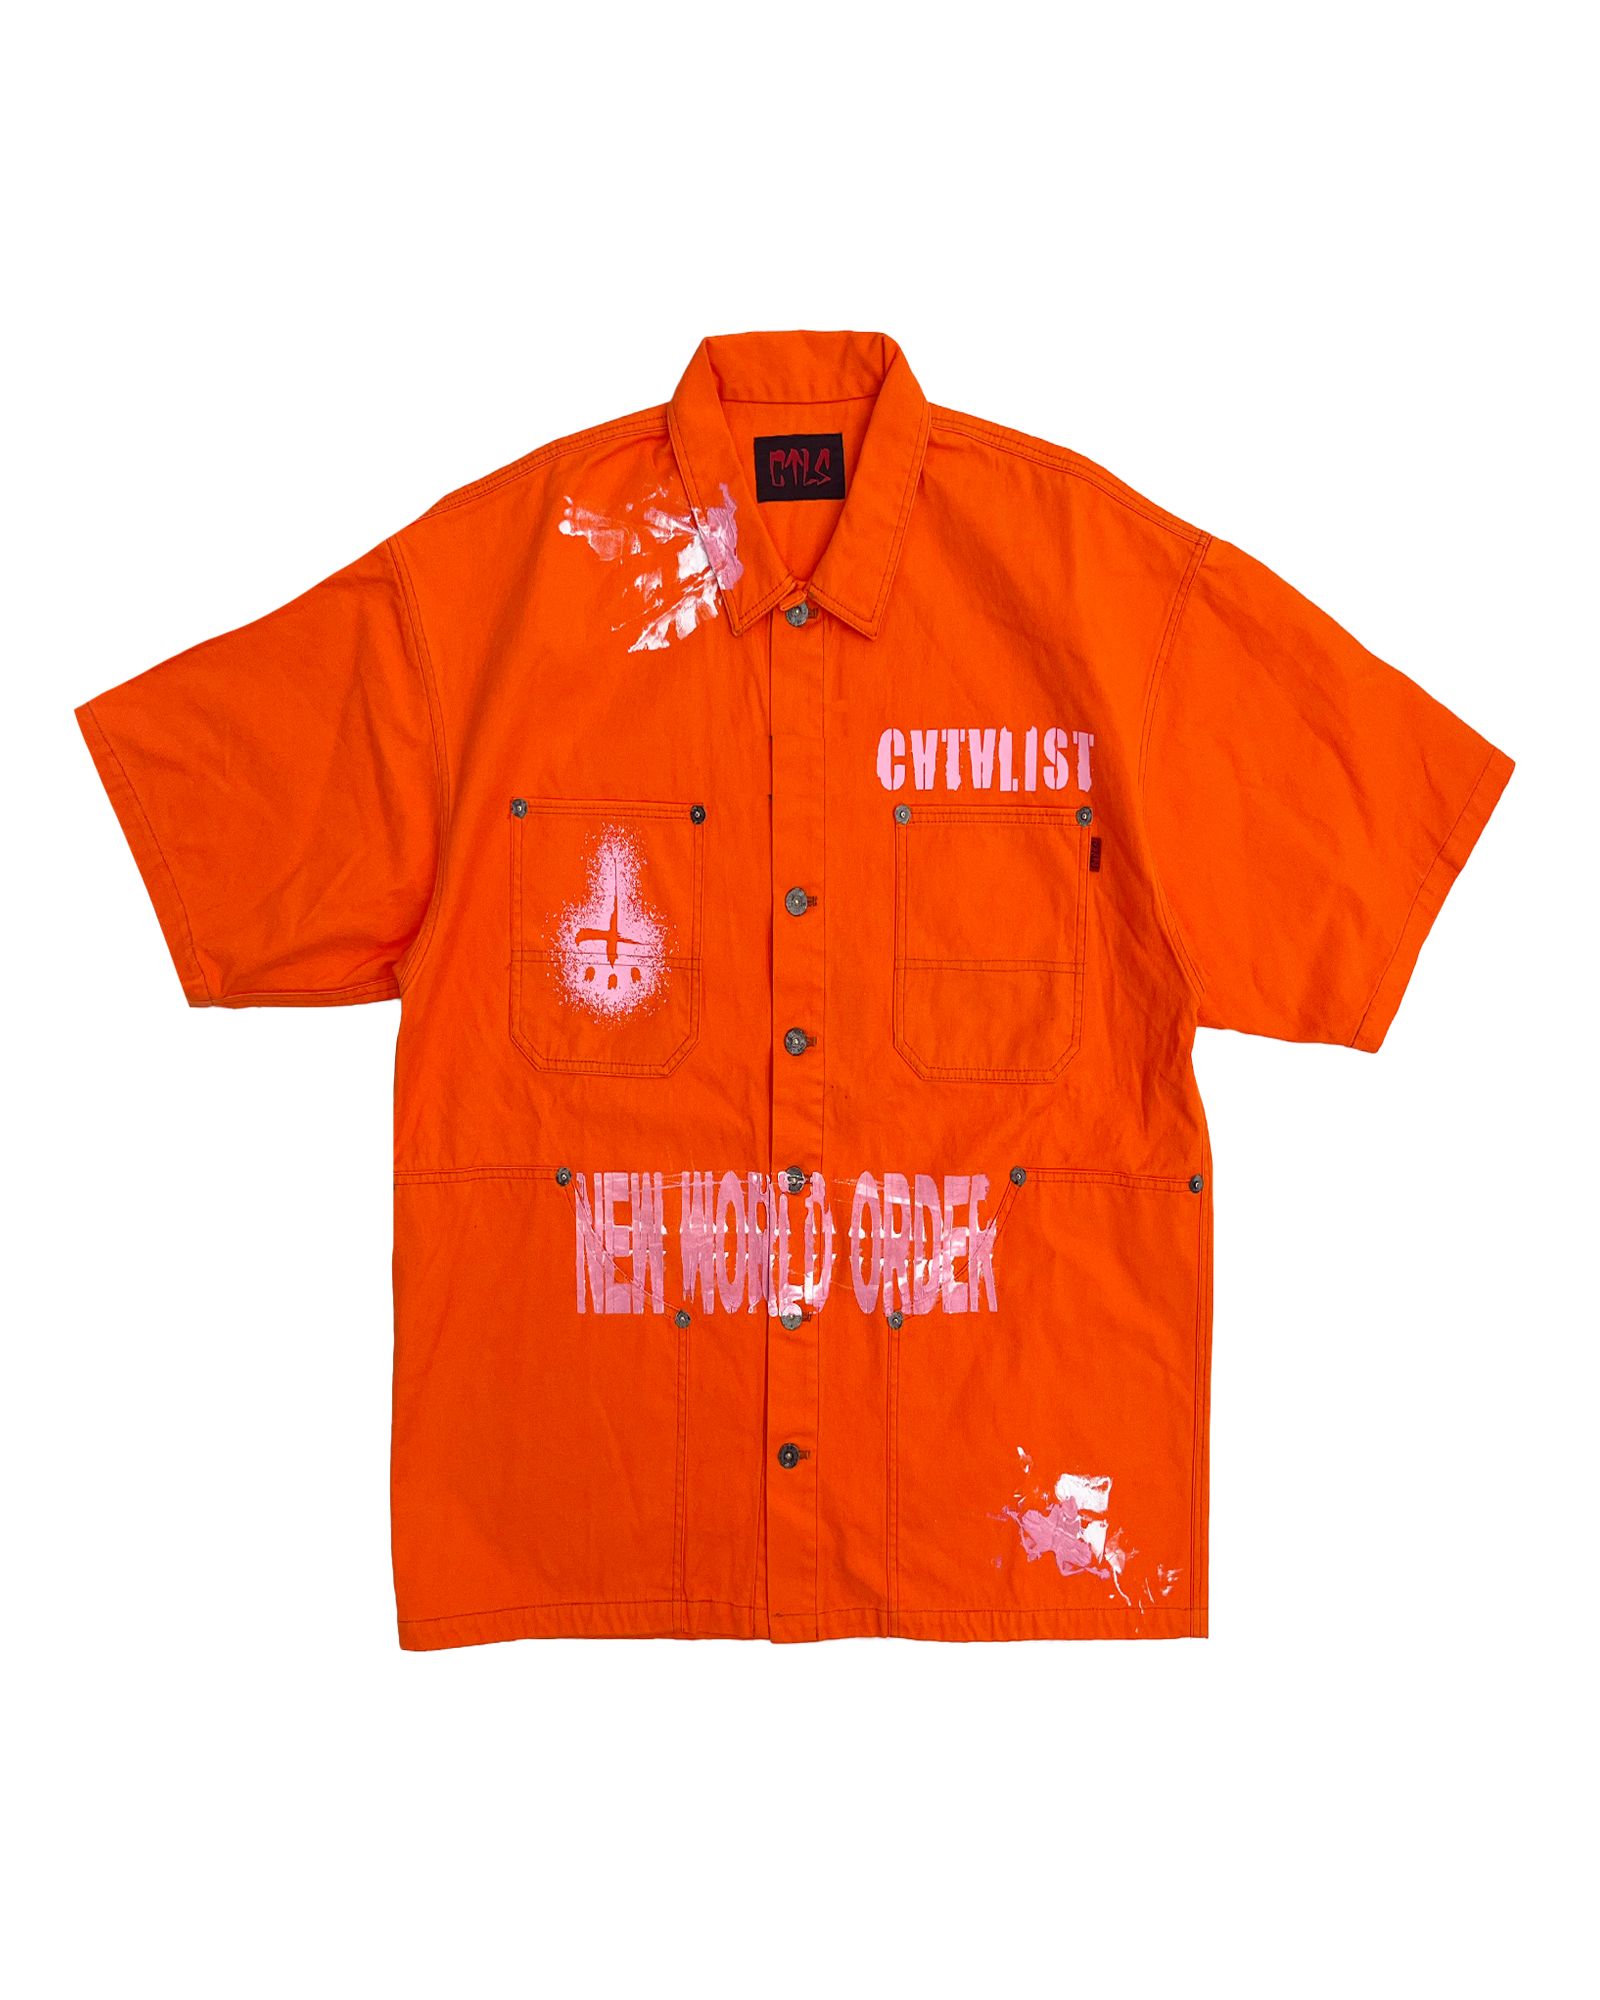 CVTVLIST - Prisoner shirt | Detail